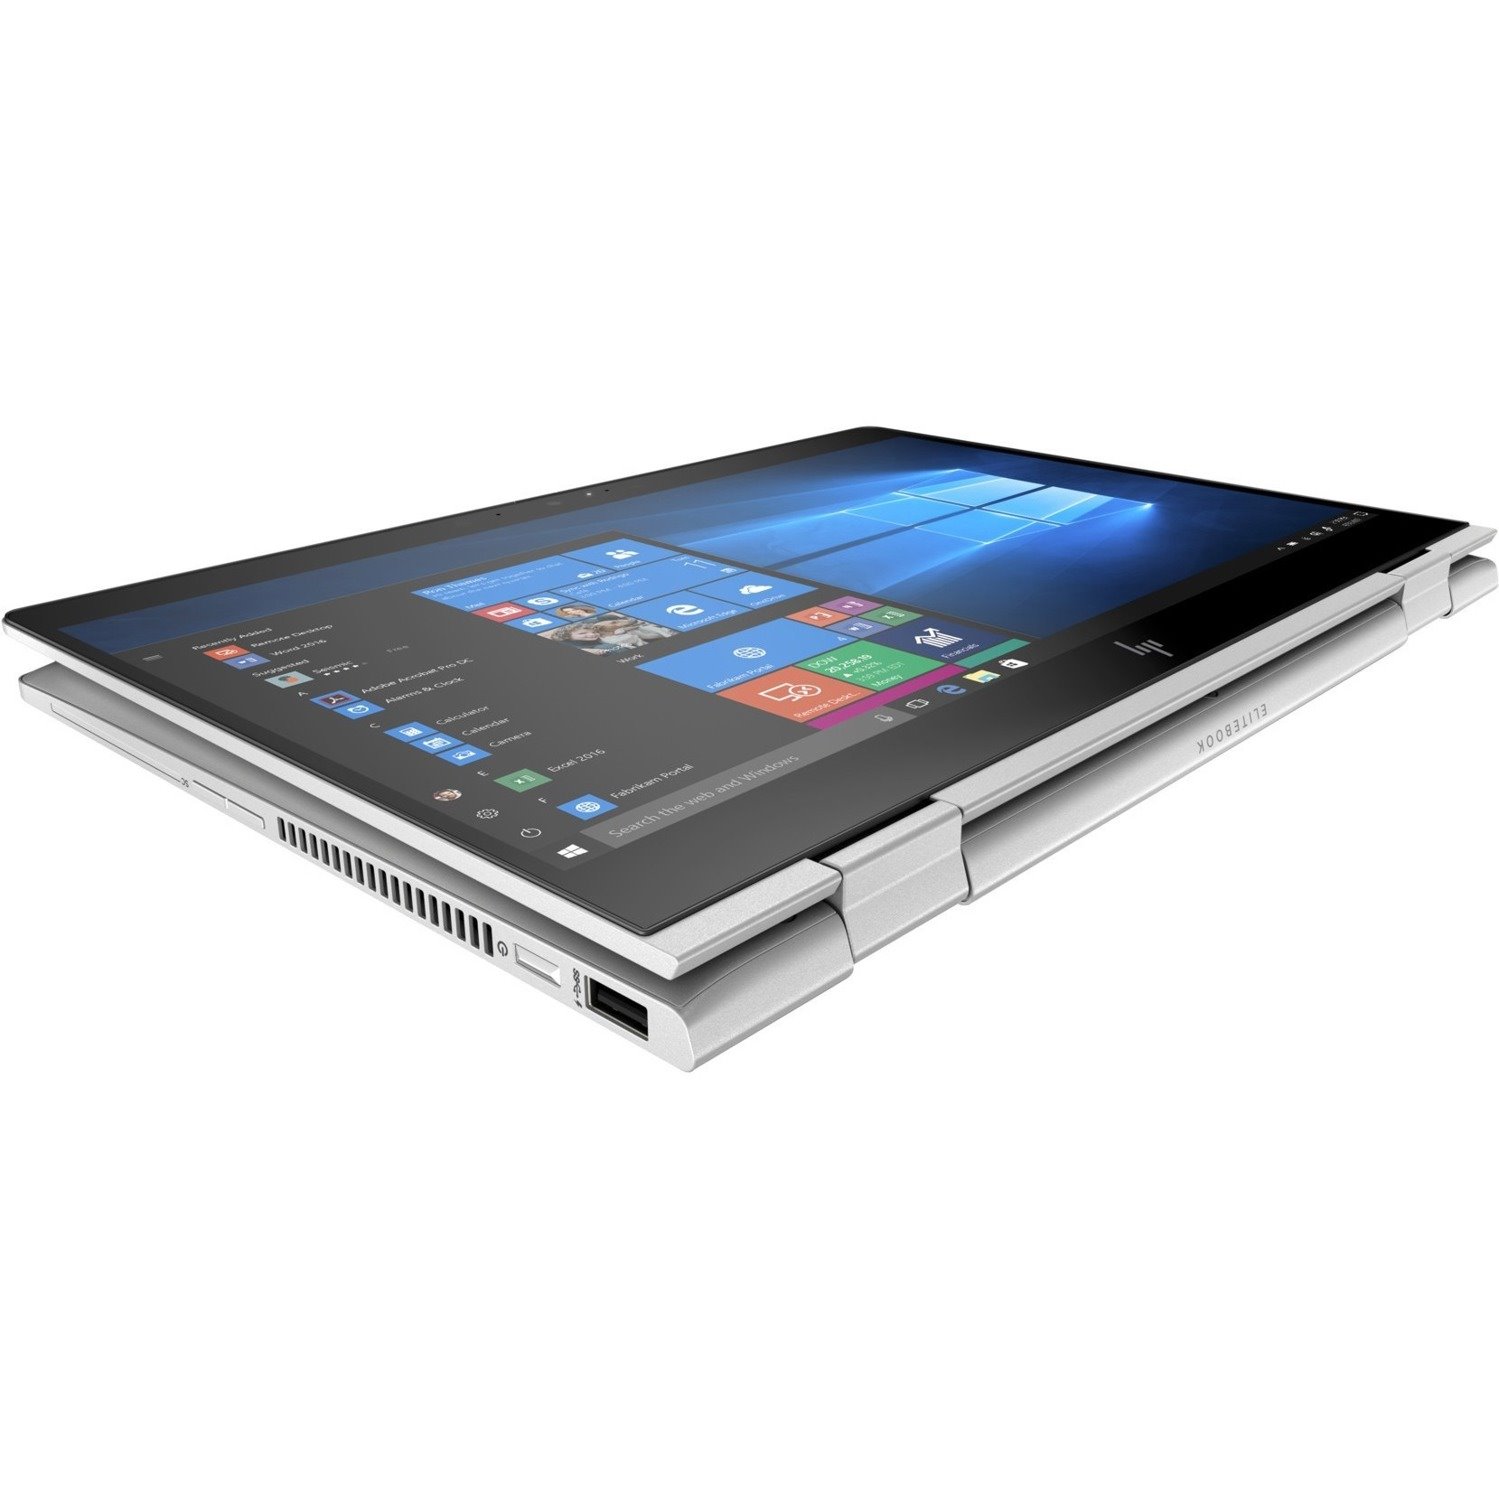 HP EliteBook x360 830 G5 13.3" Touchscreen Convertible 2 in 1 Notebook - 1920 x 1080 - Intel Core i7 8th Gen i7-8550U Quad-core (4 Core) 1.80 GHz - 8 GB Total RAM - 256 GB SSD